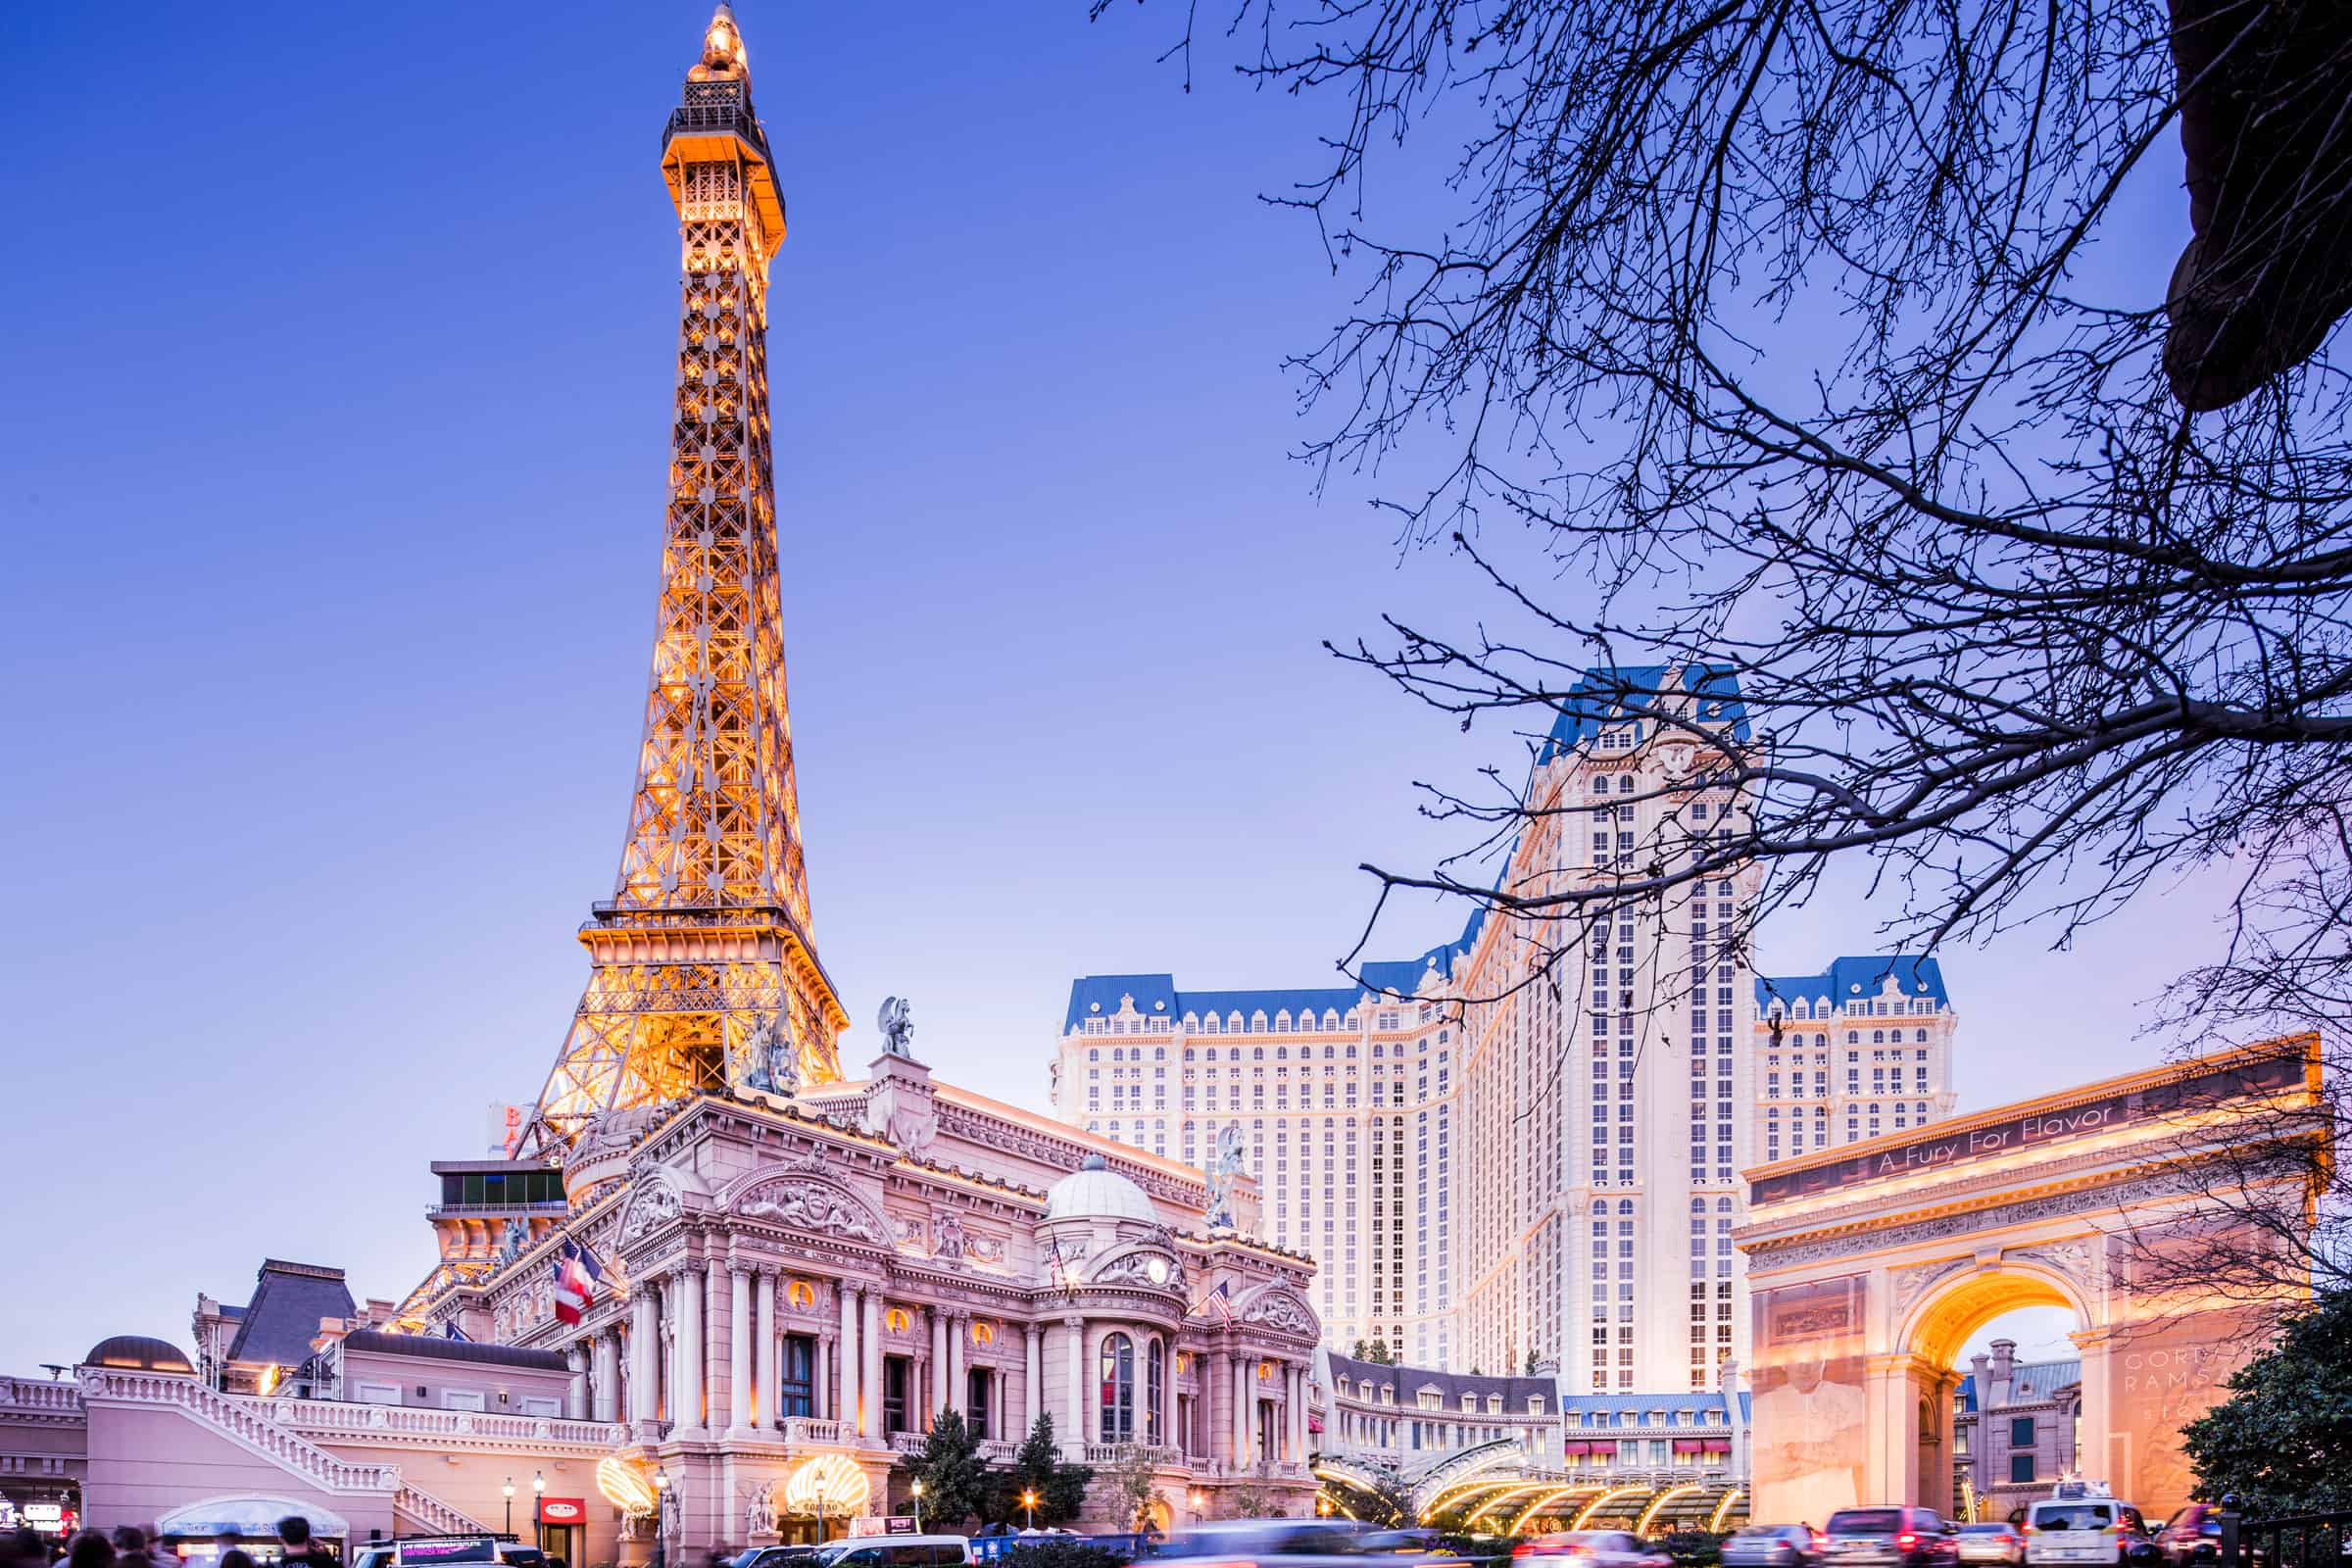 Le Village Buffet At Paris Las Vegas (Prices, Menu, Hours & Coupons 2023)